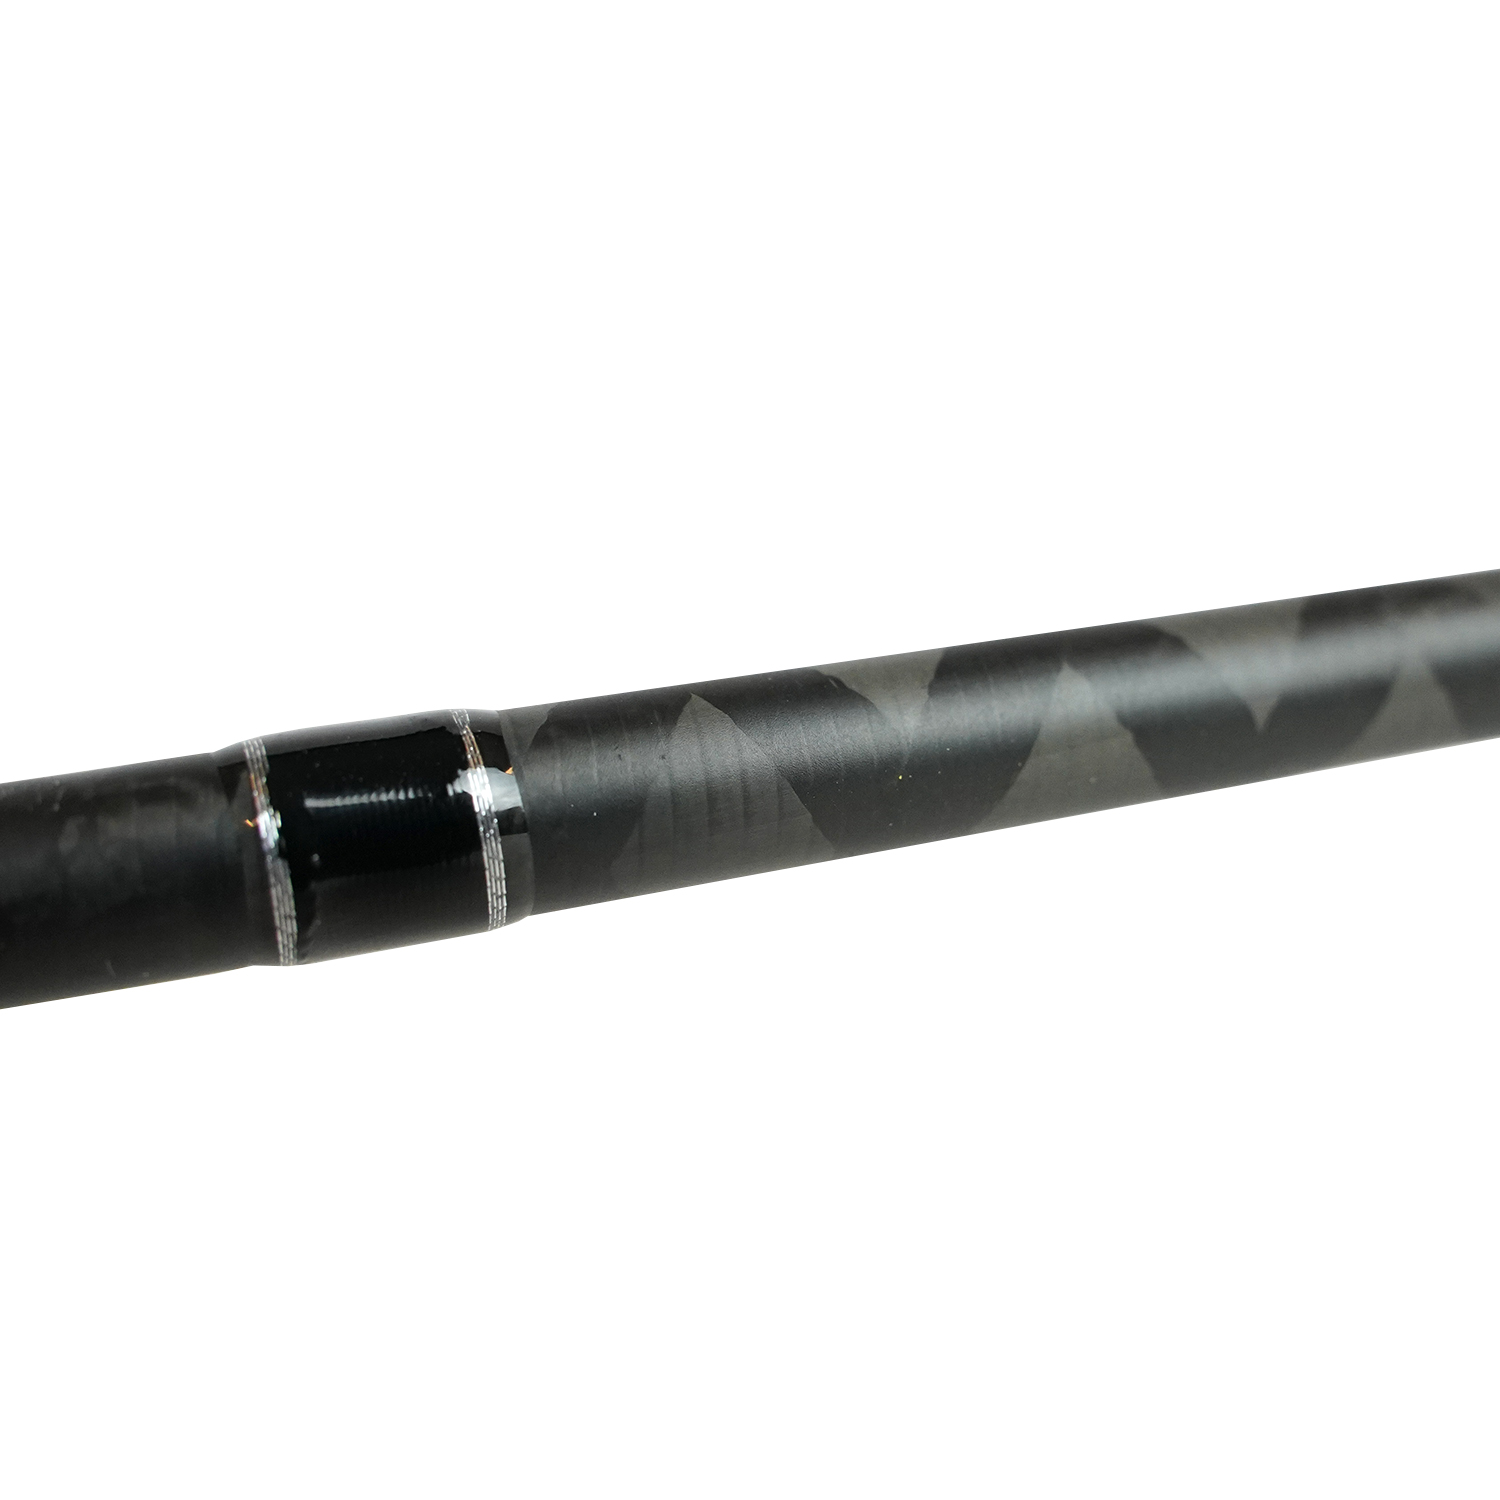 DLT Vivid Baitcasting Rod 2,10m 10-40g - Baitcasterhengel - Trigger rod - 2delen